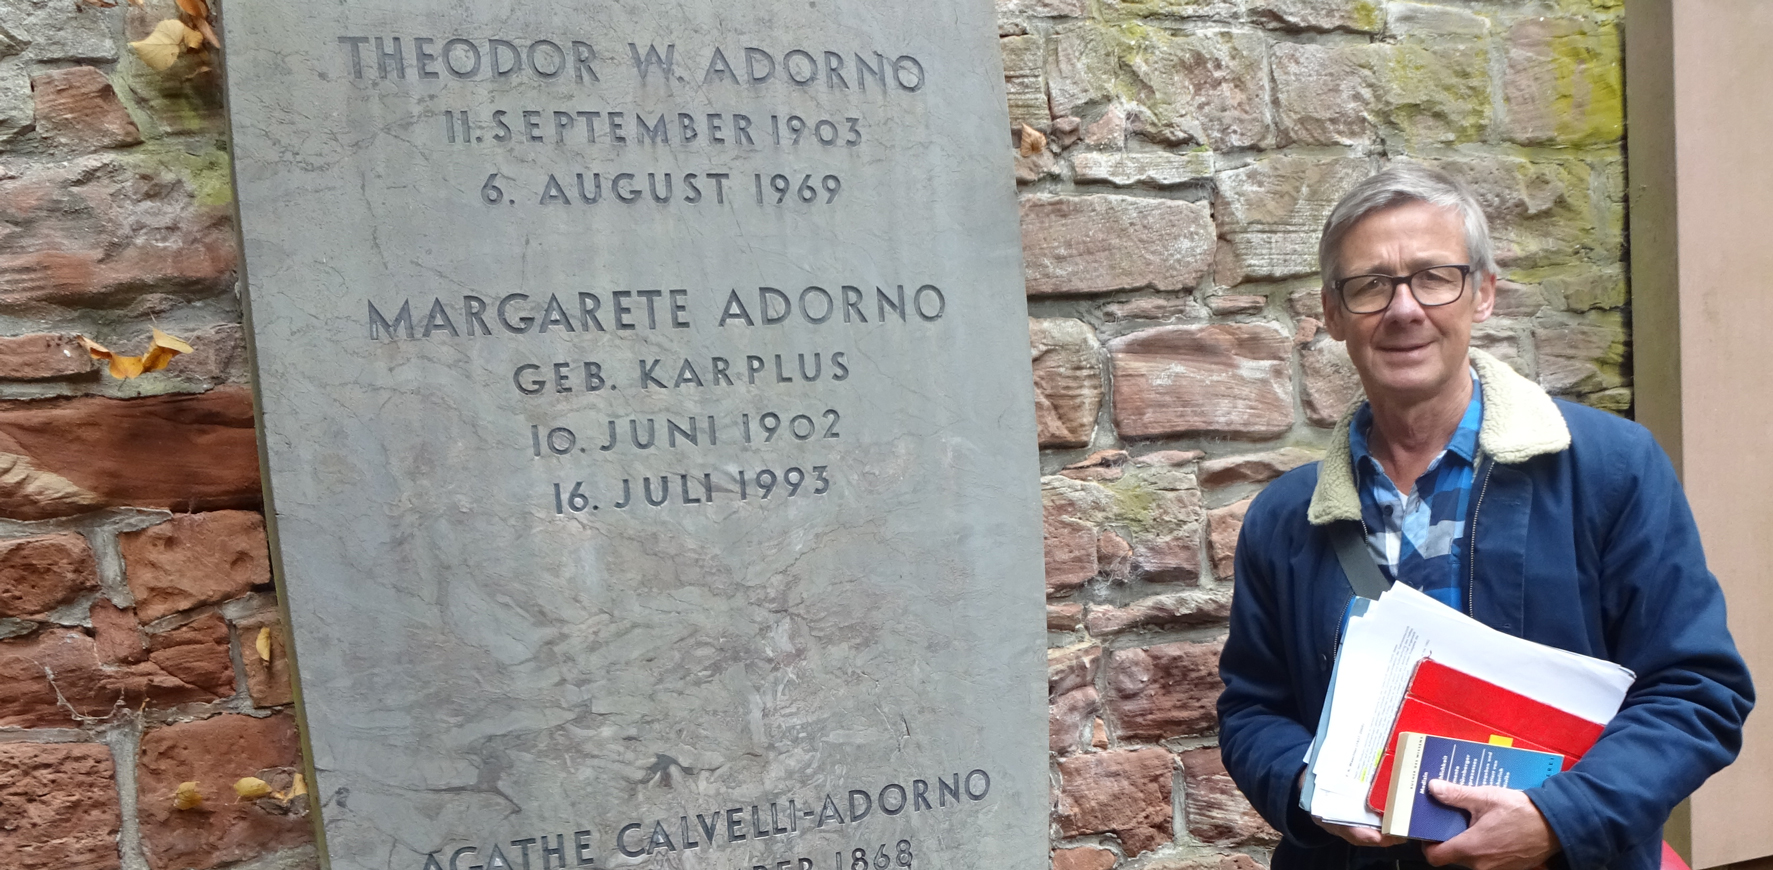 Am Grab von Theodor W. Adorno auf dem Frankfurter Hauptfriedhof